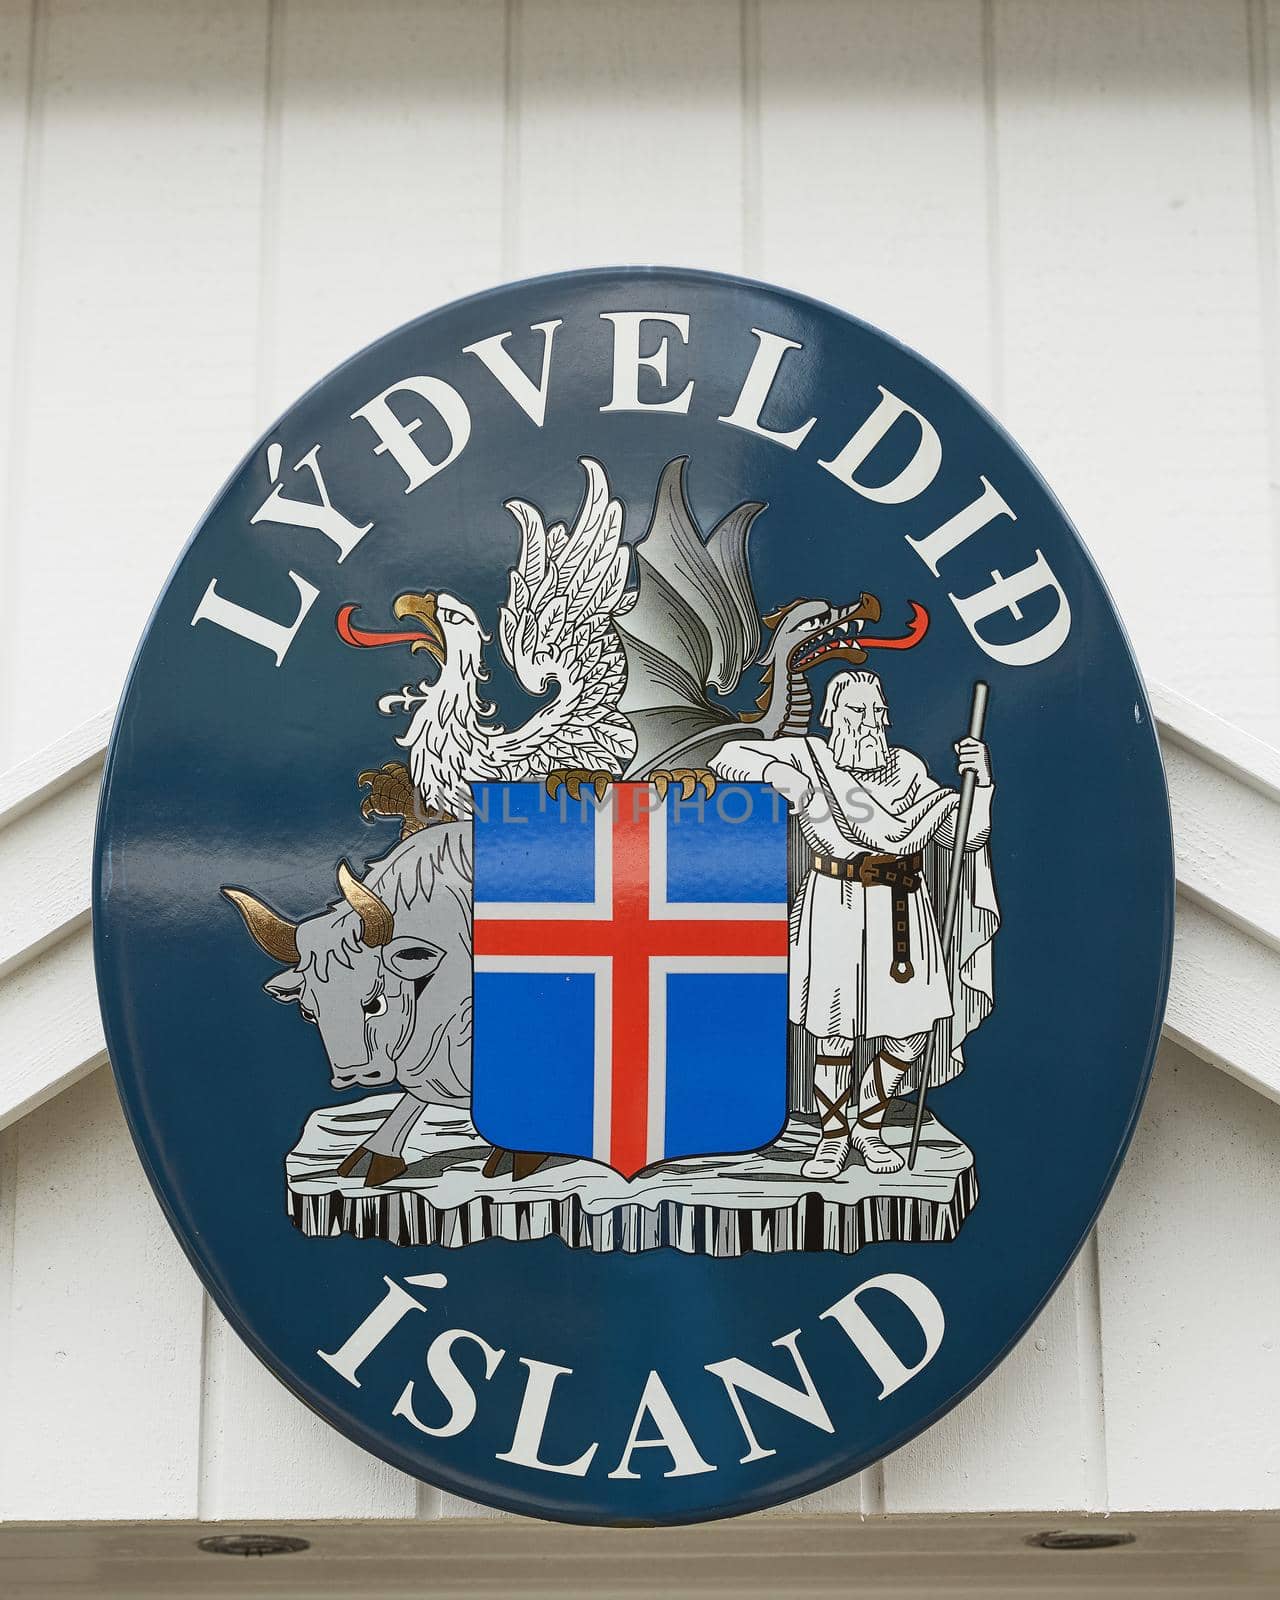 TORSHAWN, FAROE ISLANDS, DENMARK - AUGUST 21, 2018: Flag and welcome sign of Faroe Islands, Denmark on white wooden wall